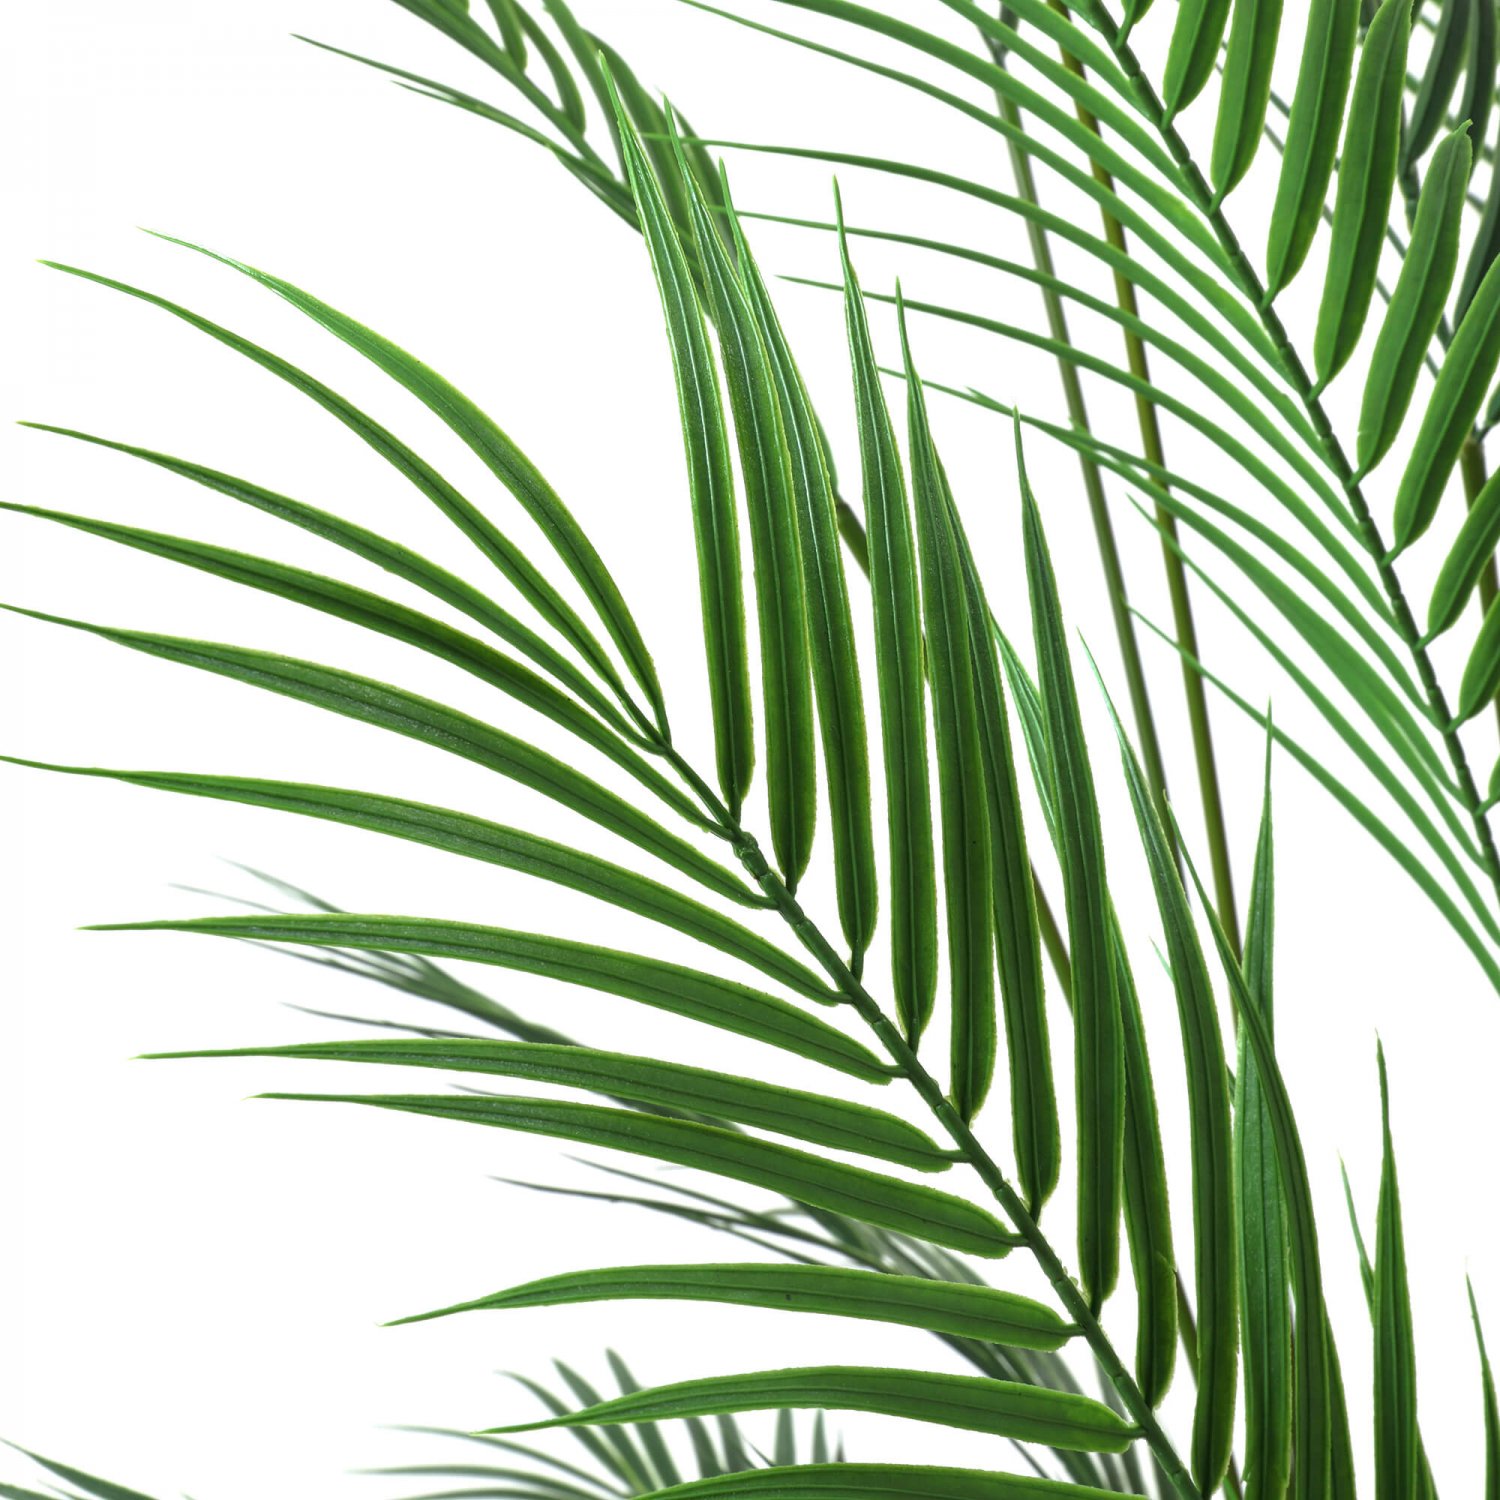 アレカヤシ GWプランター H155cm グレー 観葉植物 フェイクグリーン eco 【別倉庫直送品】 